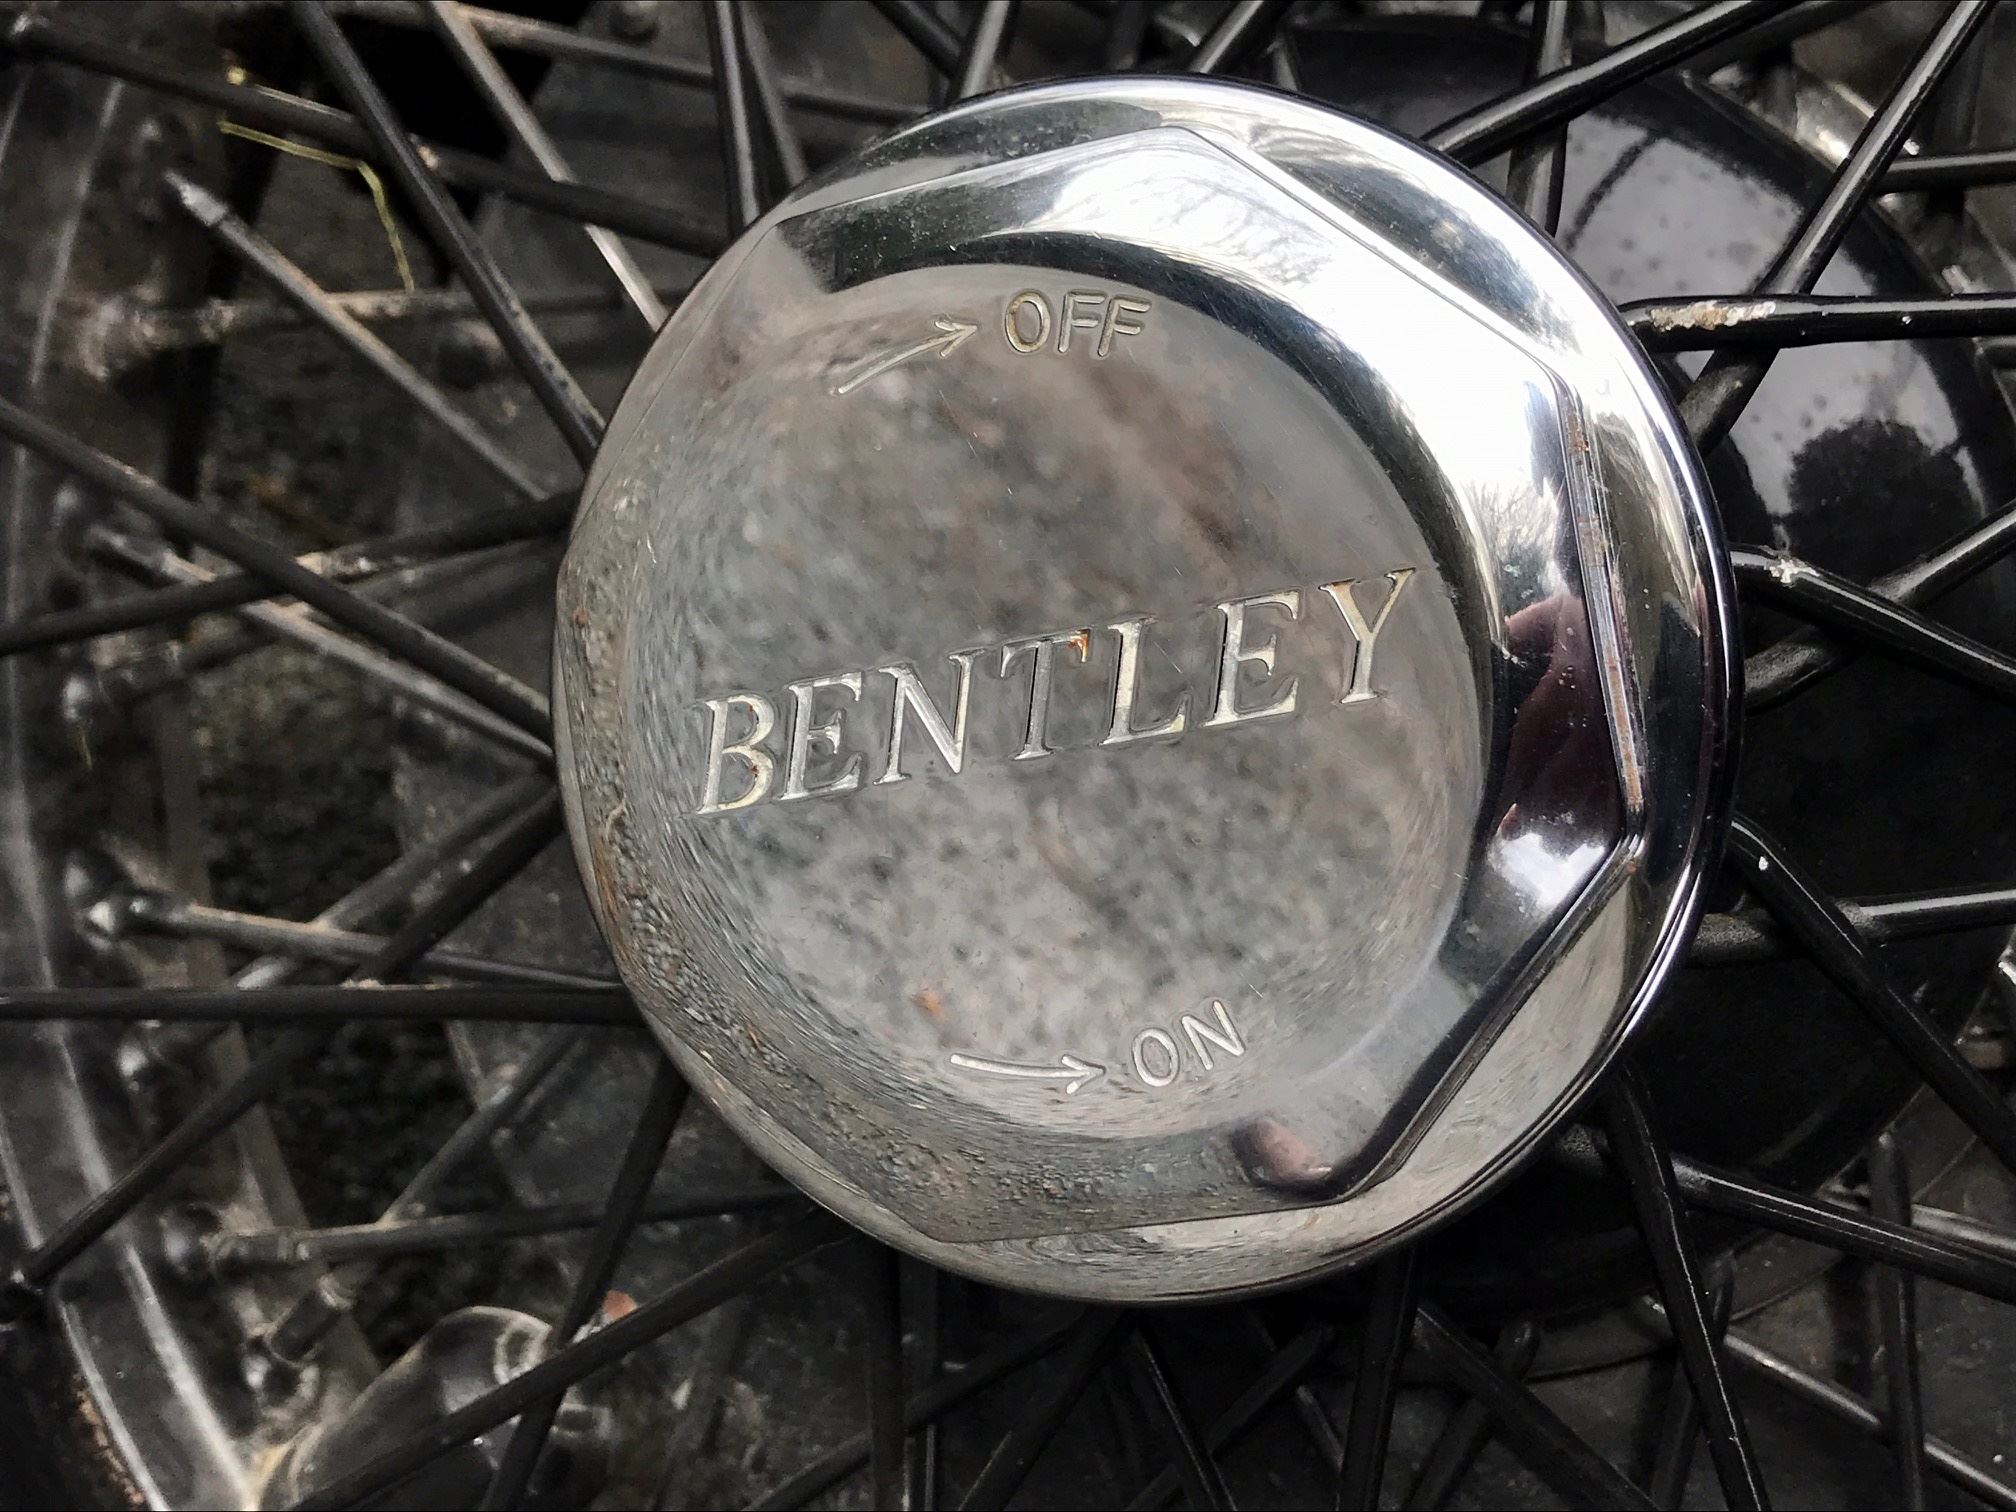 Bentley 3 12 litre bufwgm9m2wgjc2twudqub